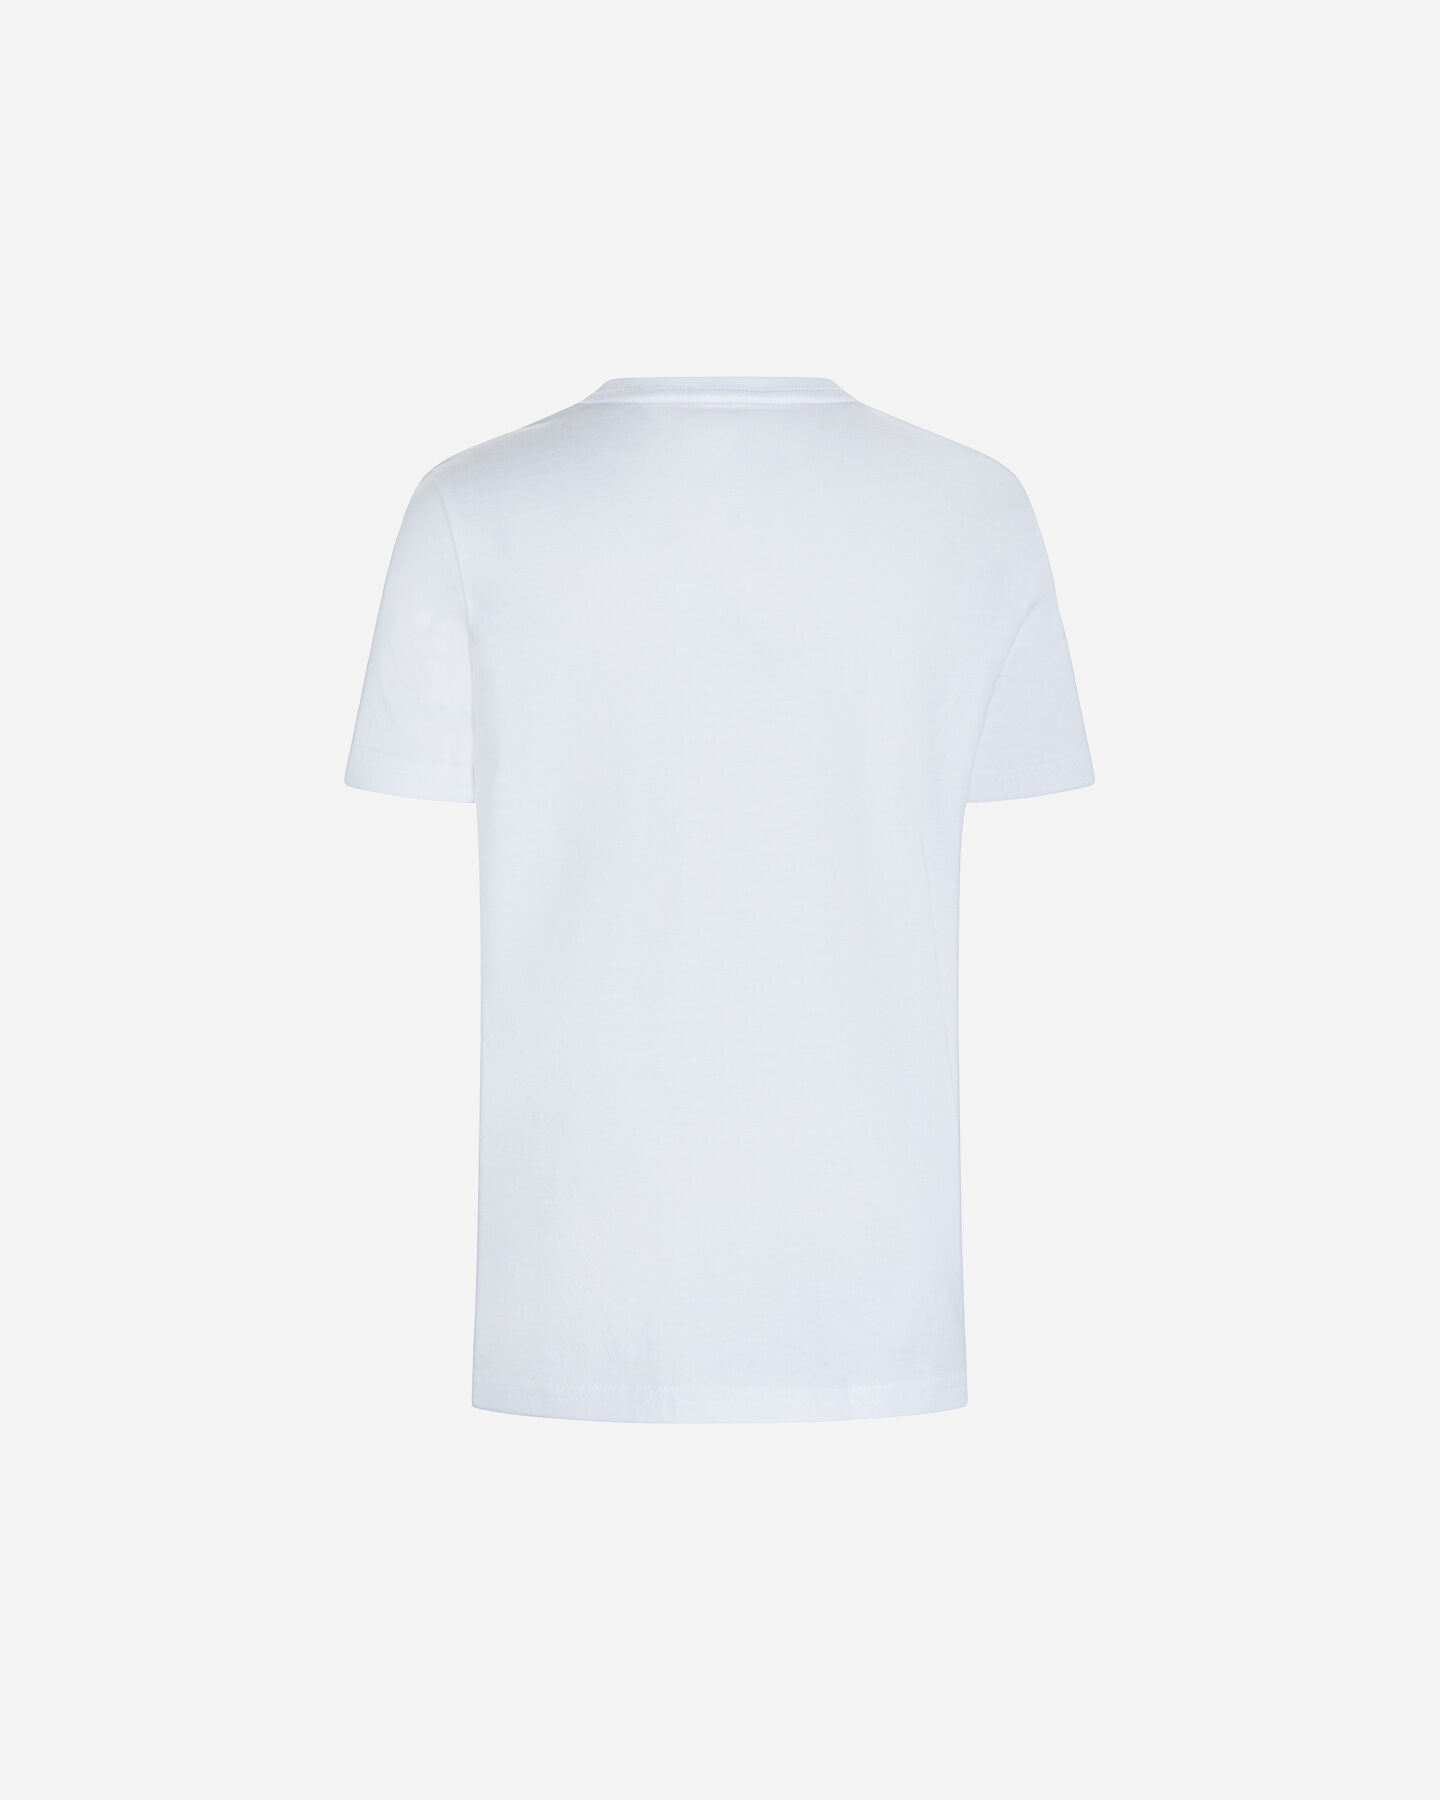  T-Shirt PUMA ESSENTIAL+ LOGO JR S5606793|79|104 scatto 1